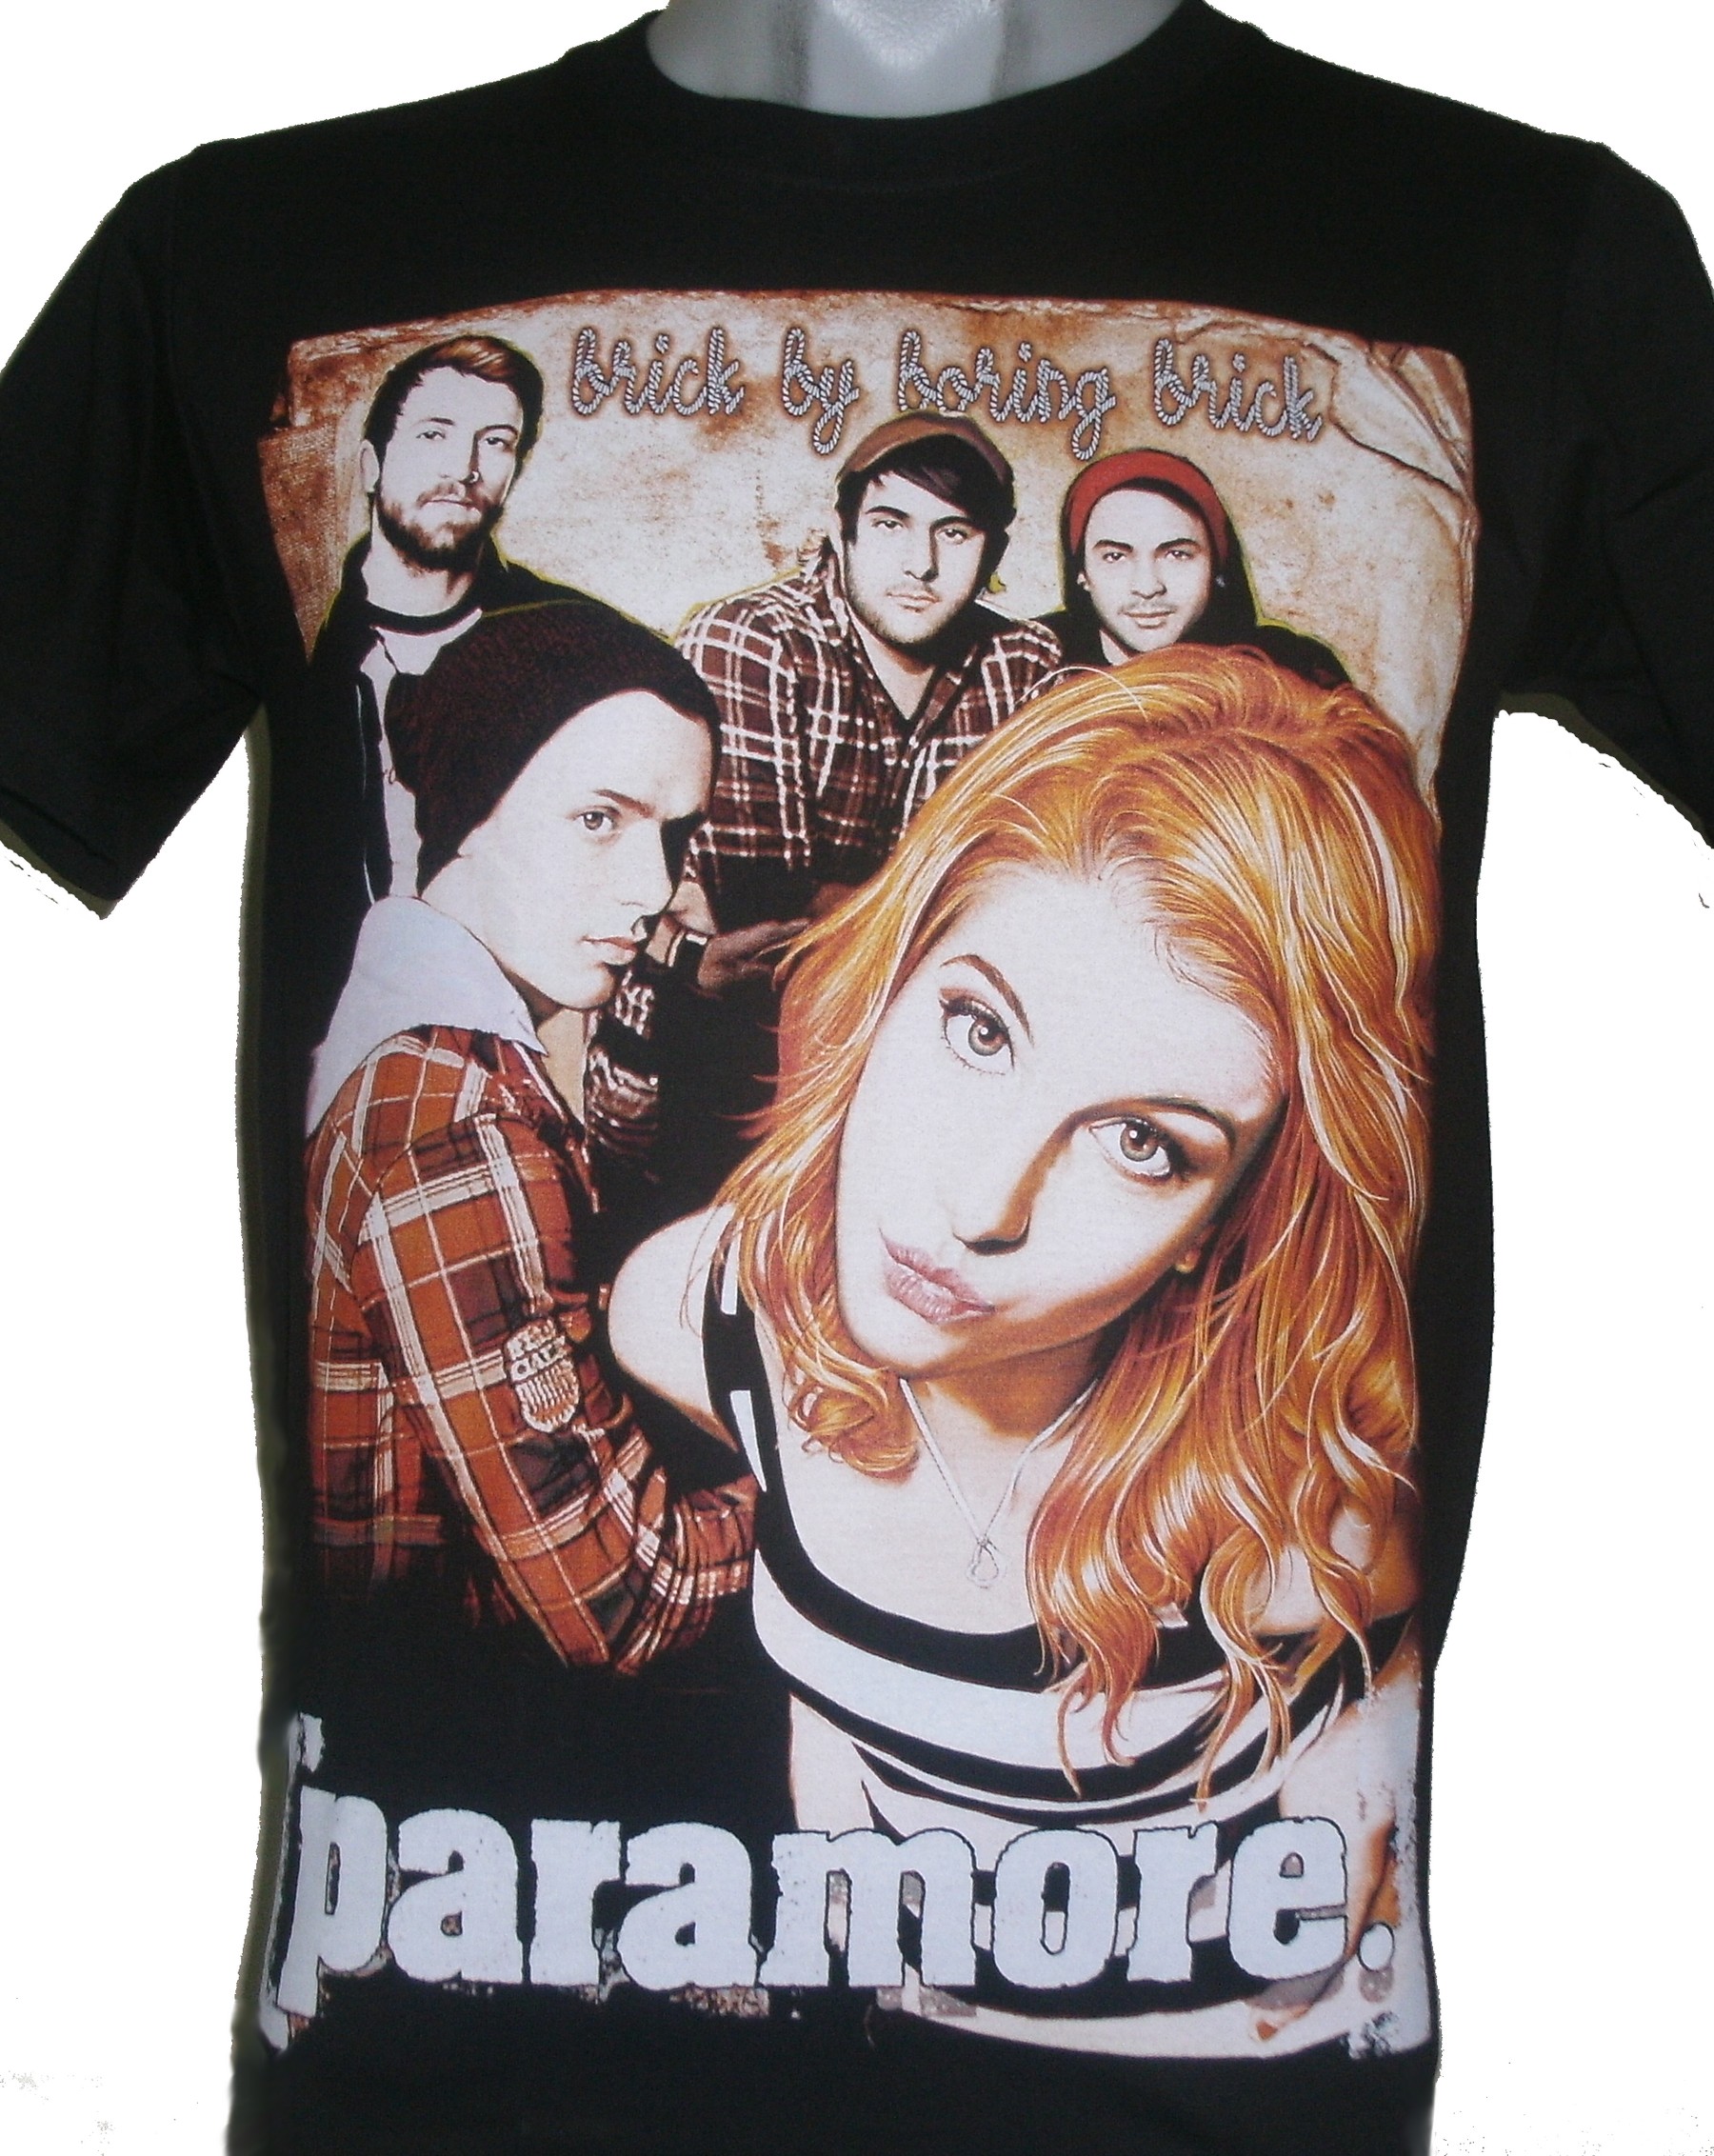 Paramore t-shirt Brick by Boring Brick size S